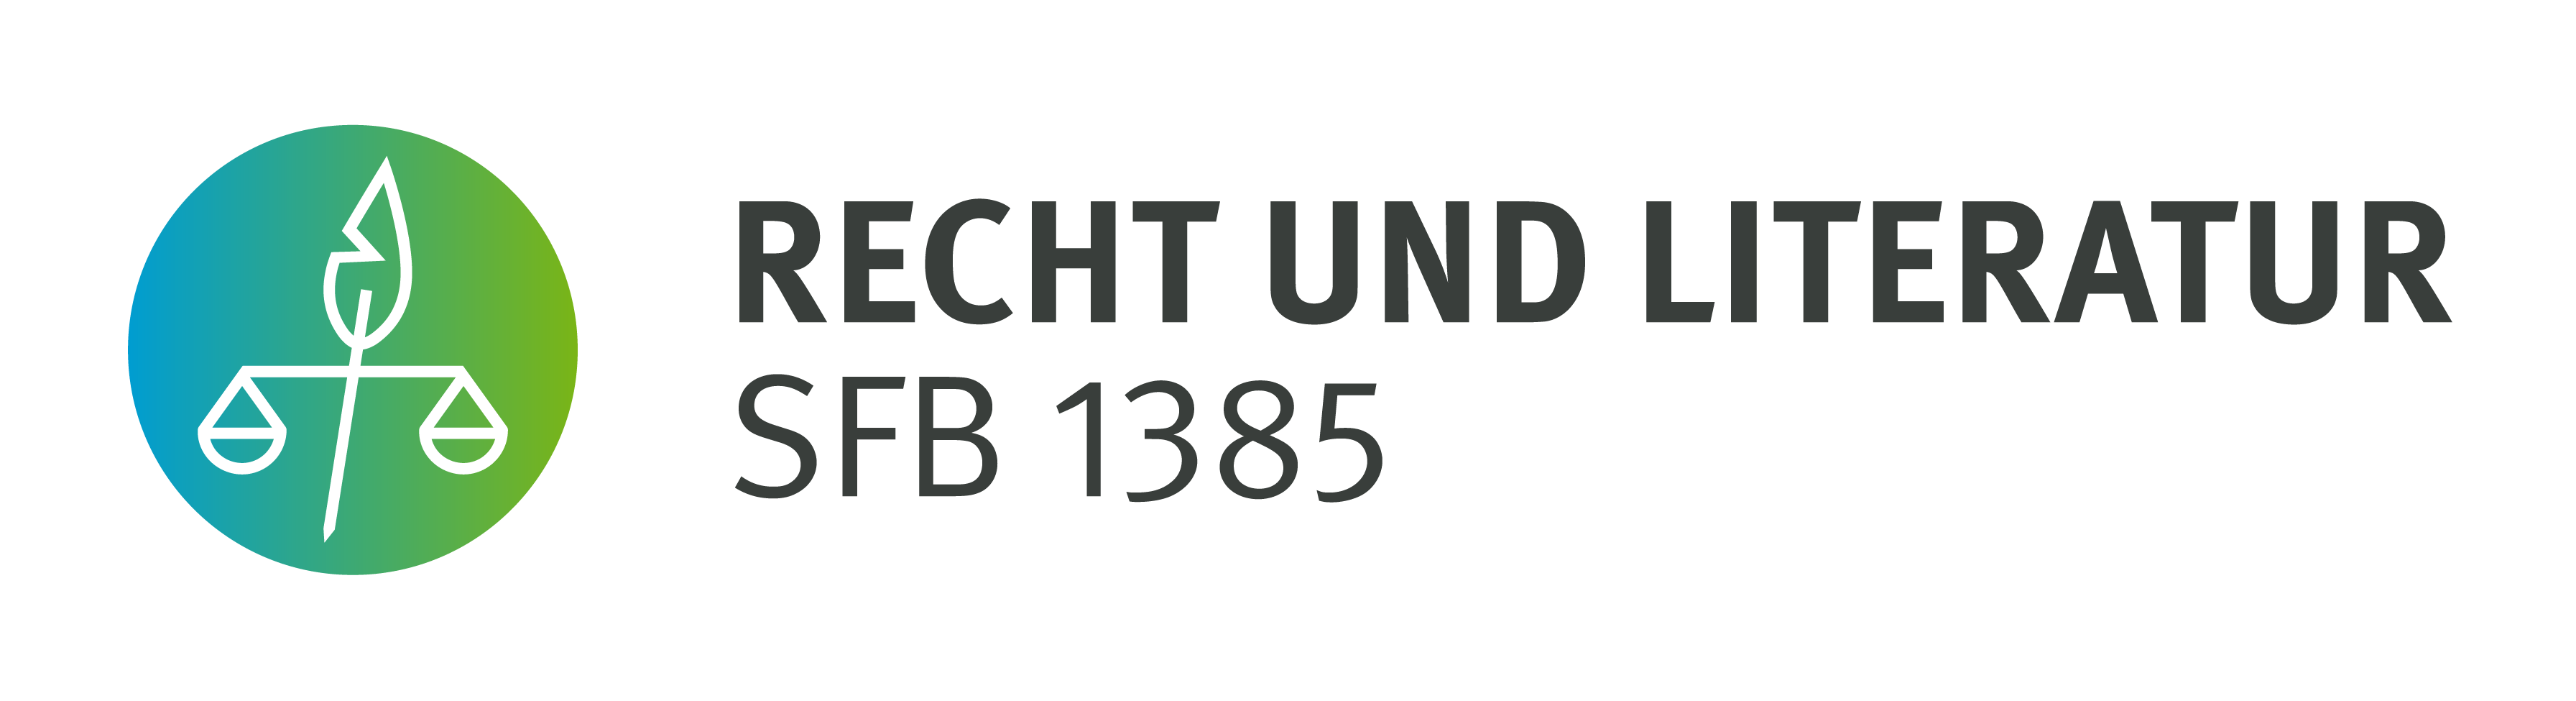 SFB1385 - "Recht und Literatur"""